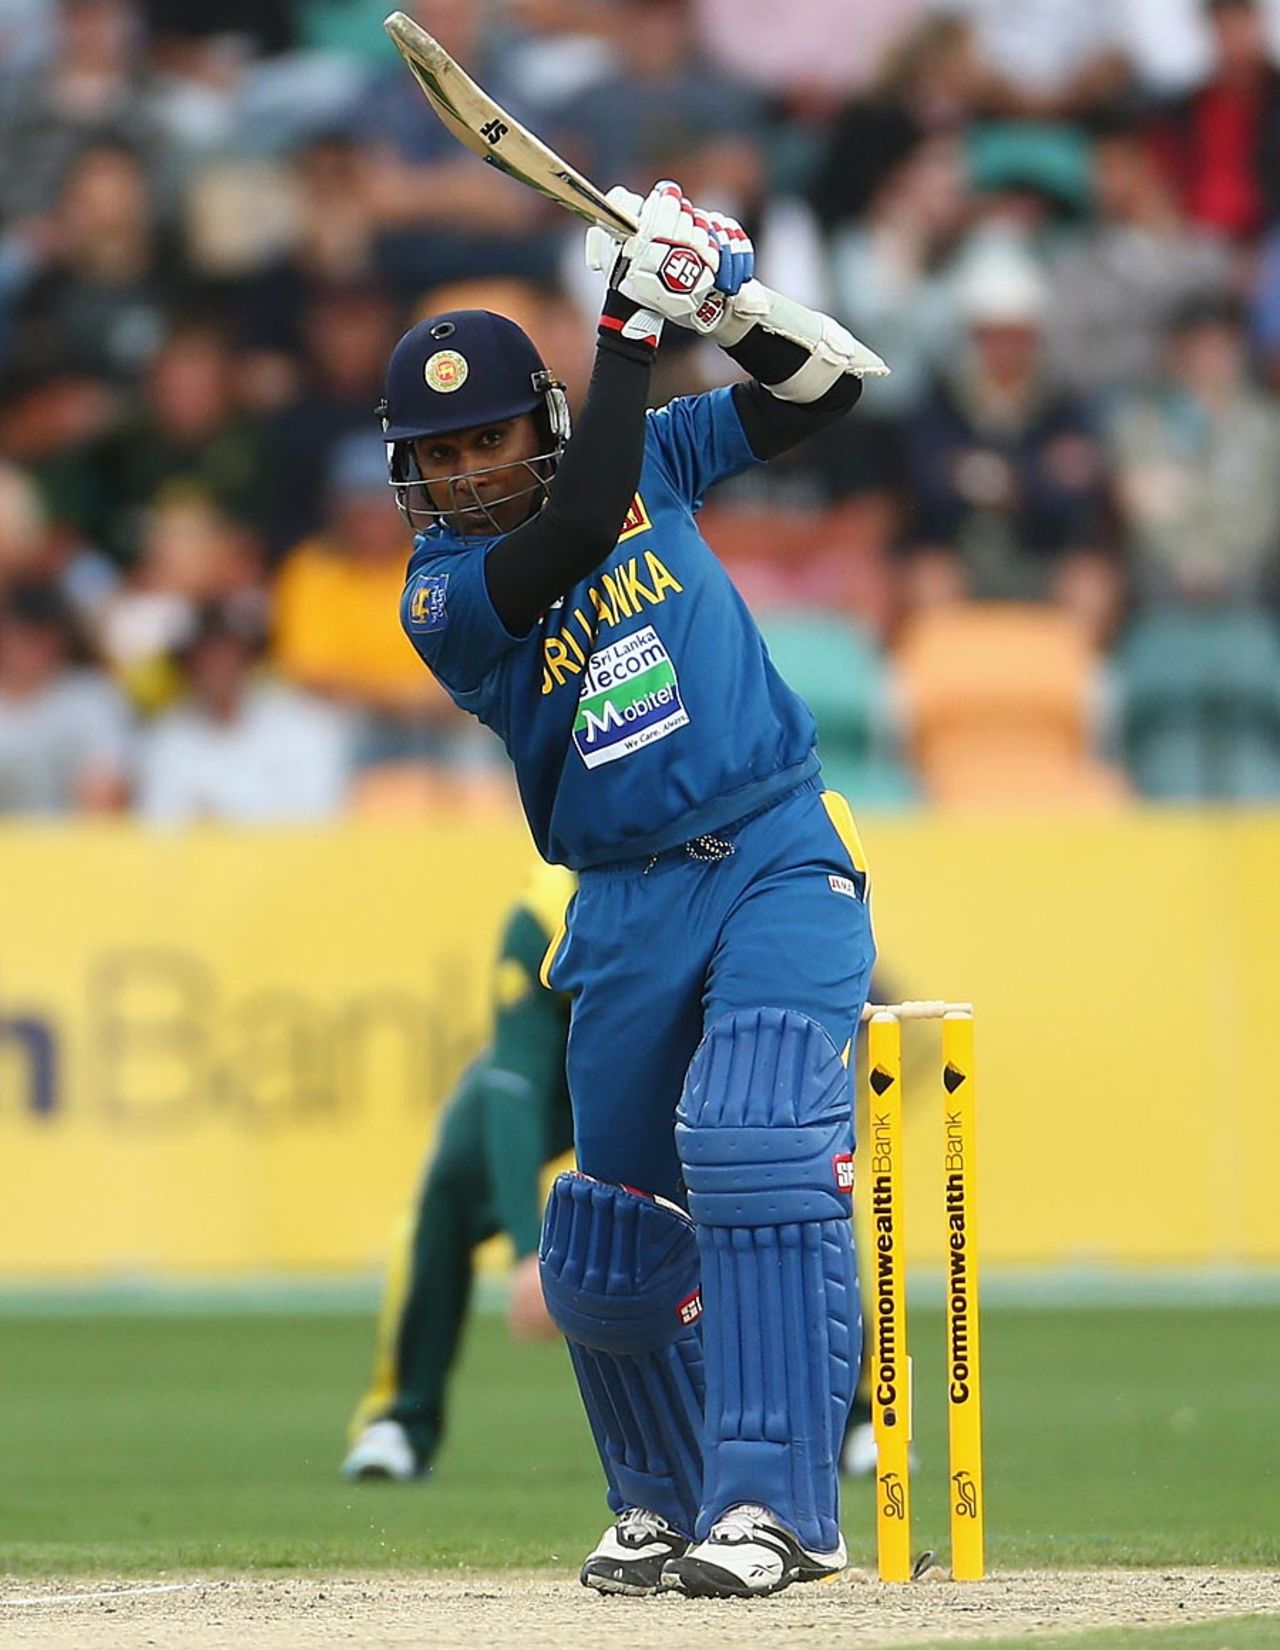 Mahela Jayawardene scored 38 before before being dismissed tamely, Australia v Sri Lanka, 5th ODI, Hobart, January 23, 2013